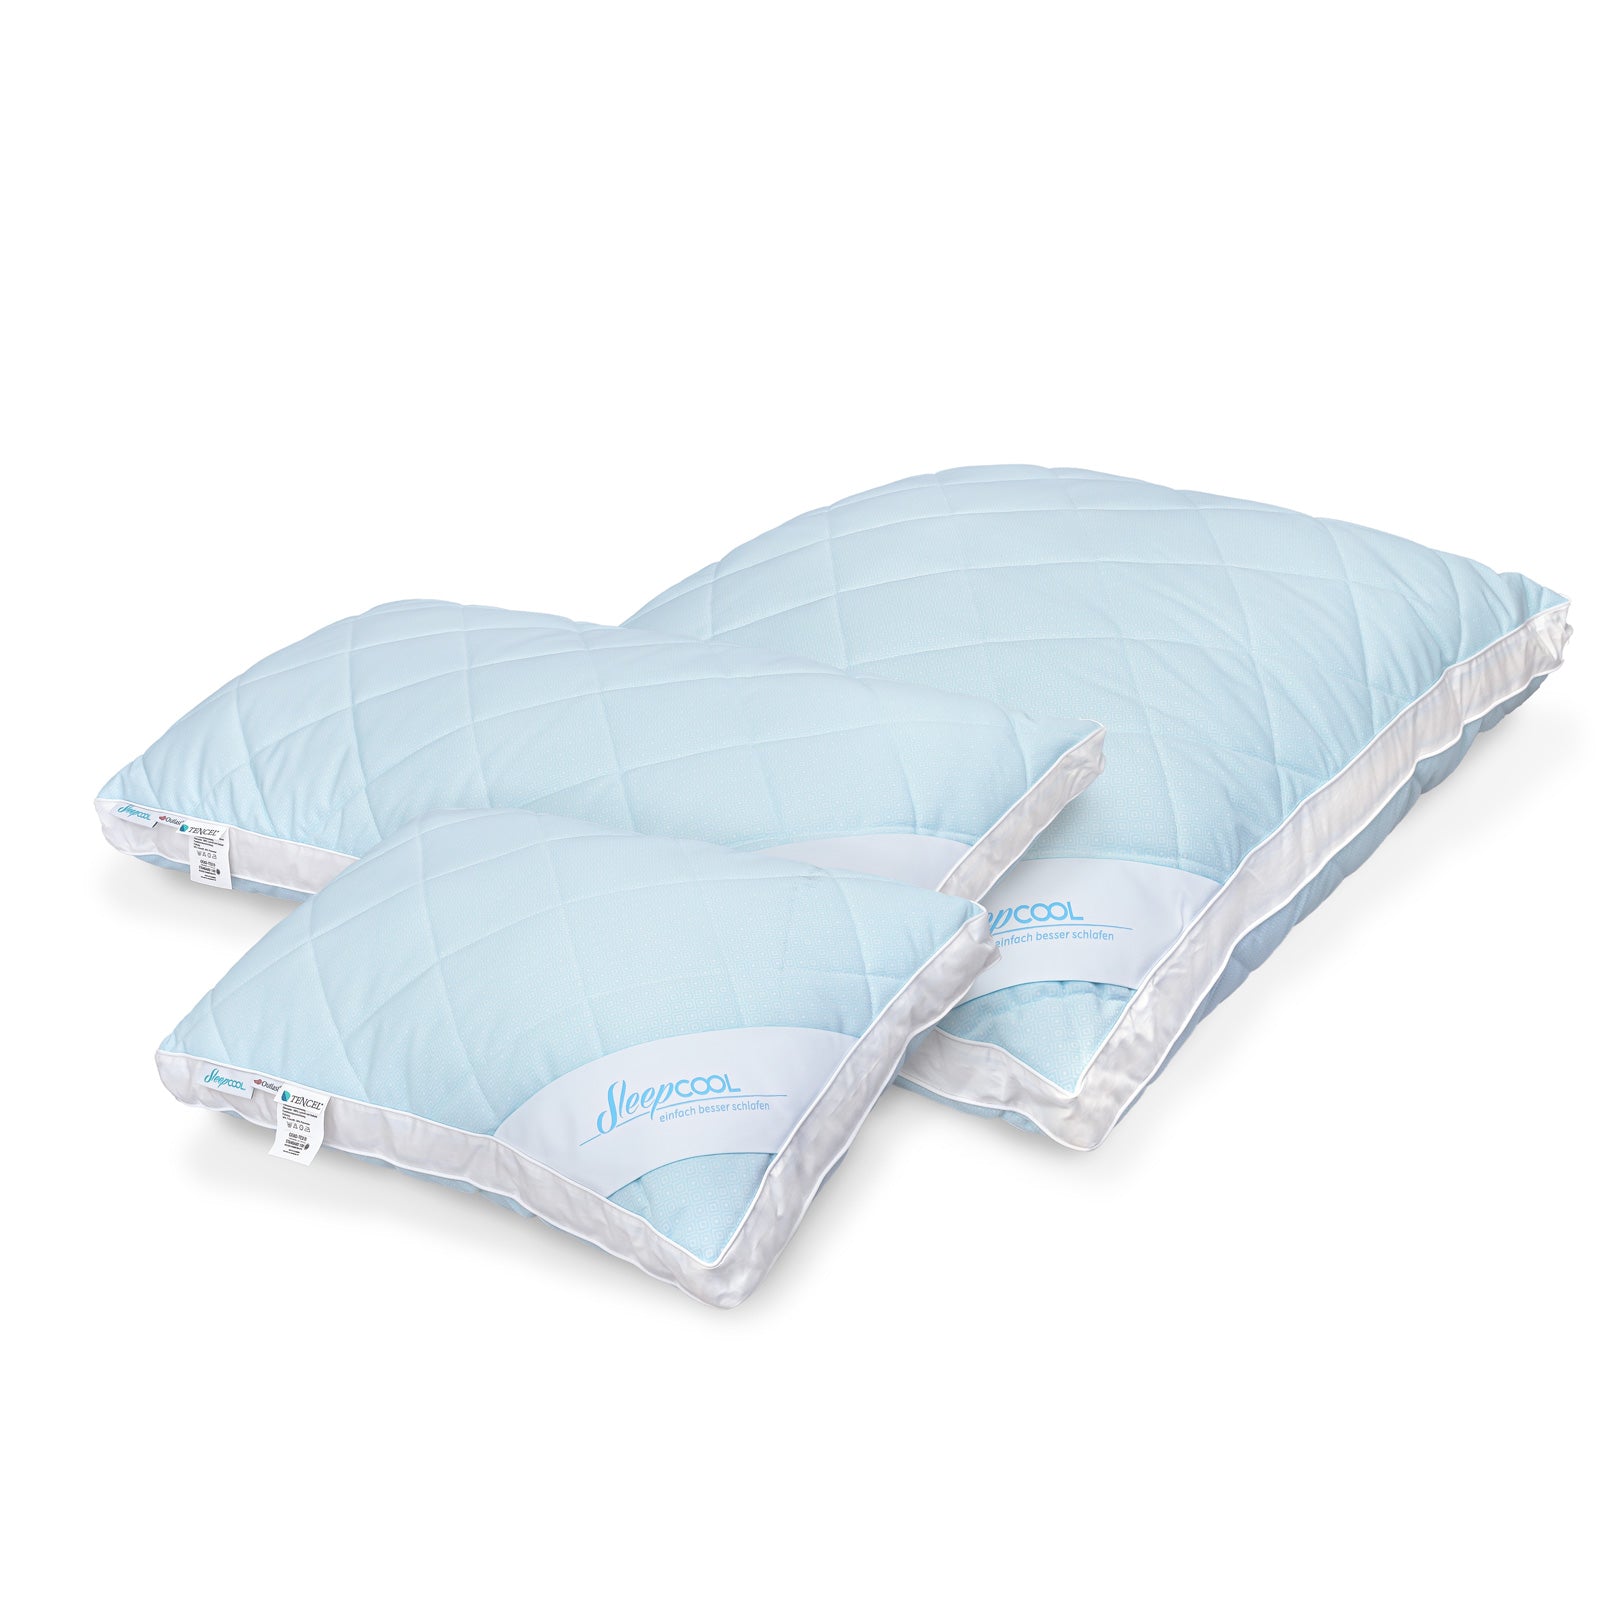 Temperature-regulating pillow COOL.CLOUD – climate-regulating pillow - sweat less, freeze less, sleep better